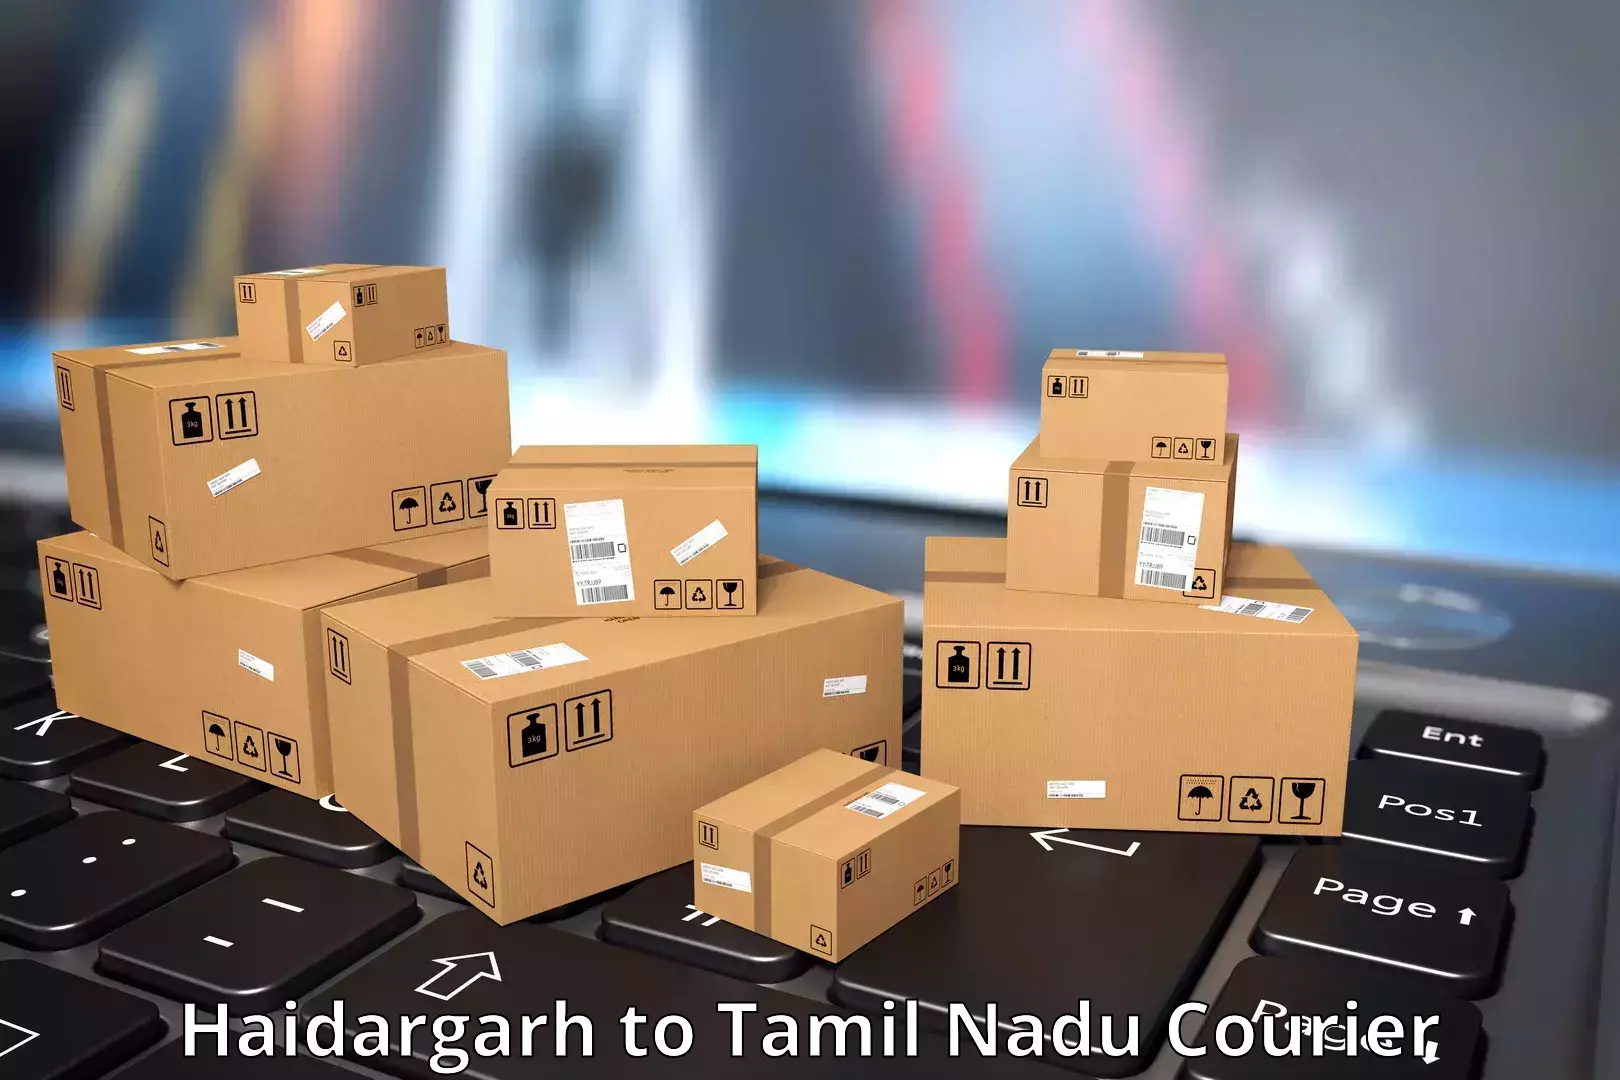 Modern courier technology Haidargarh to Tamil Nadu